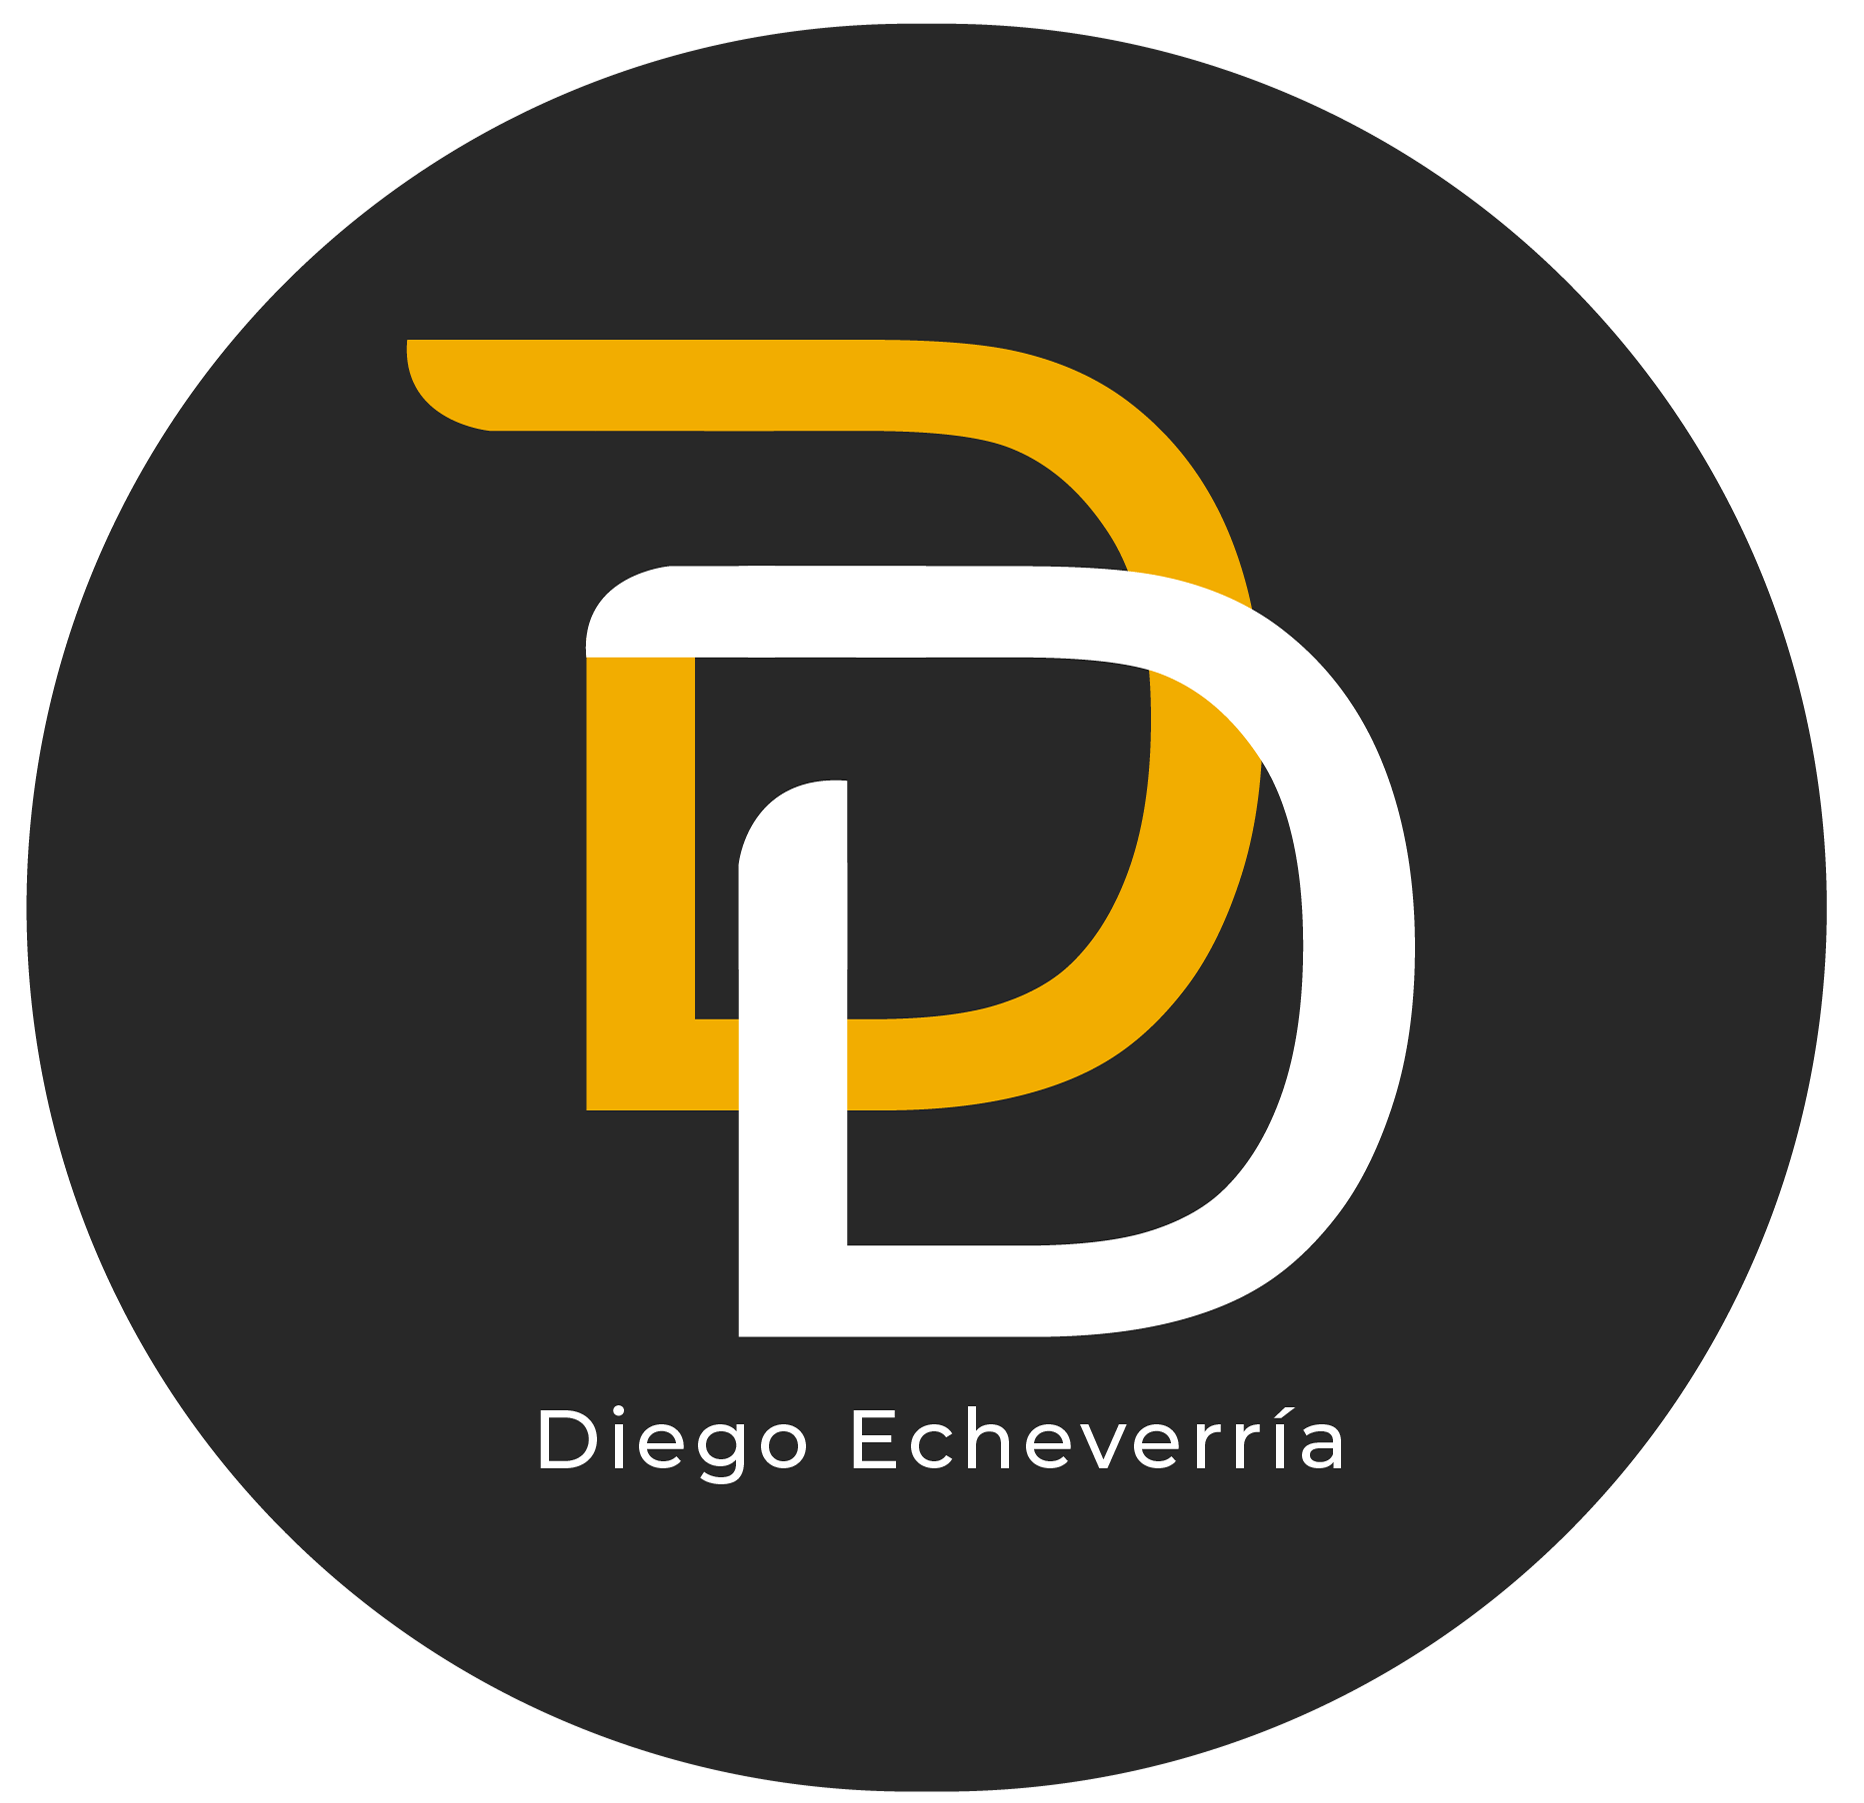 Diego Echeverría